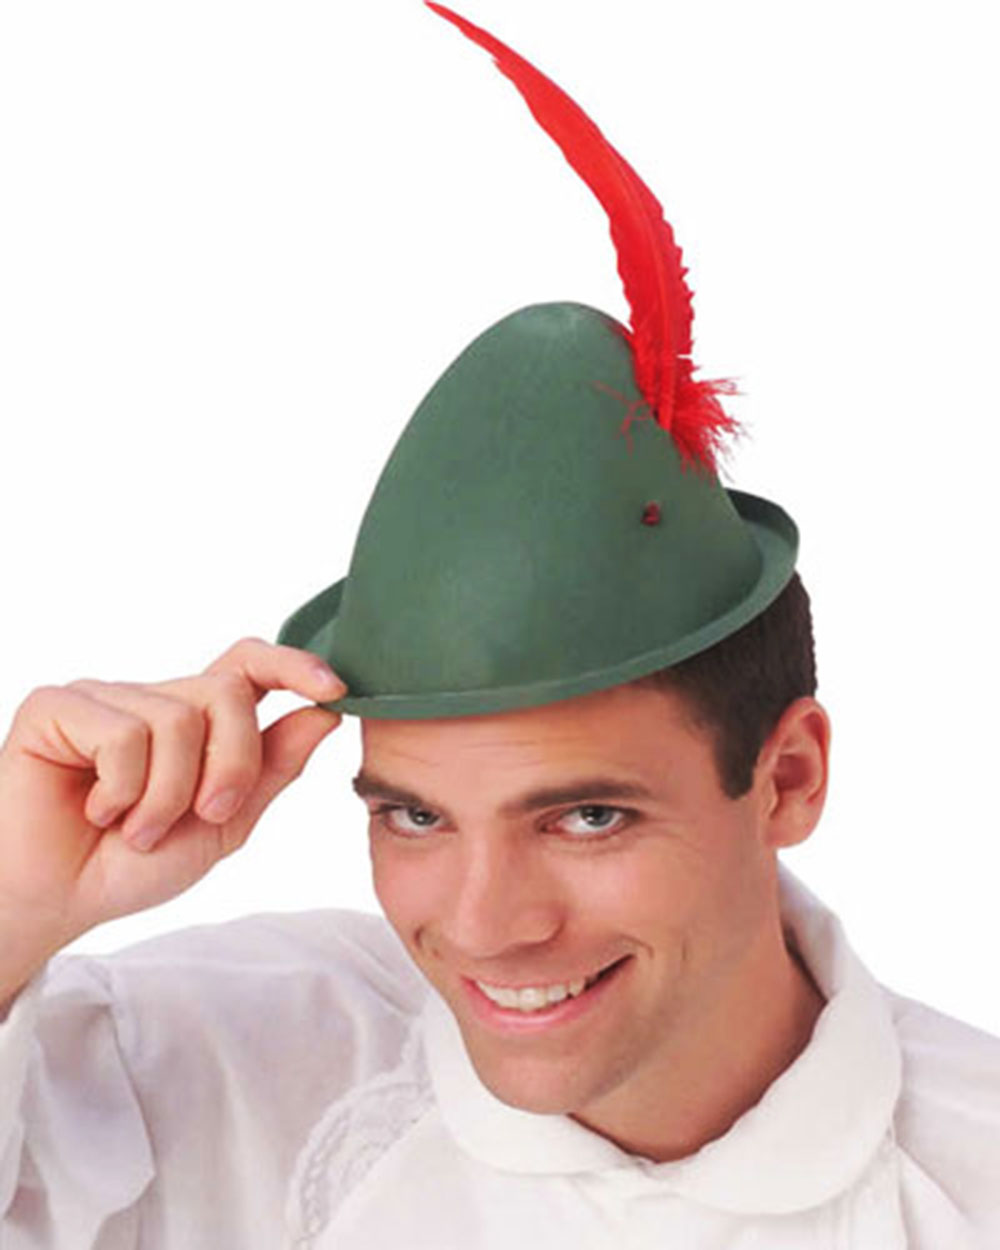 Yeşil Renk Kırmızı Tüylü Peter Pan Şapkası Robin Hood Şapkası 24X23 cm (Lisinya)